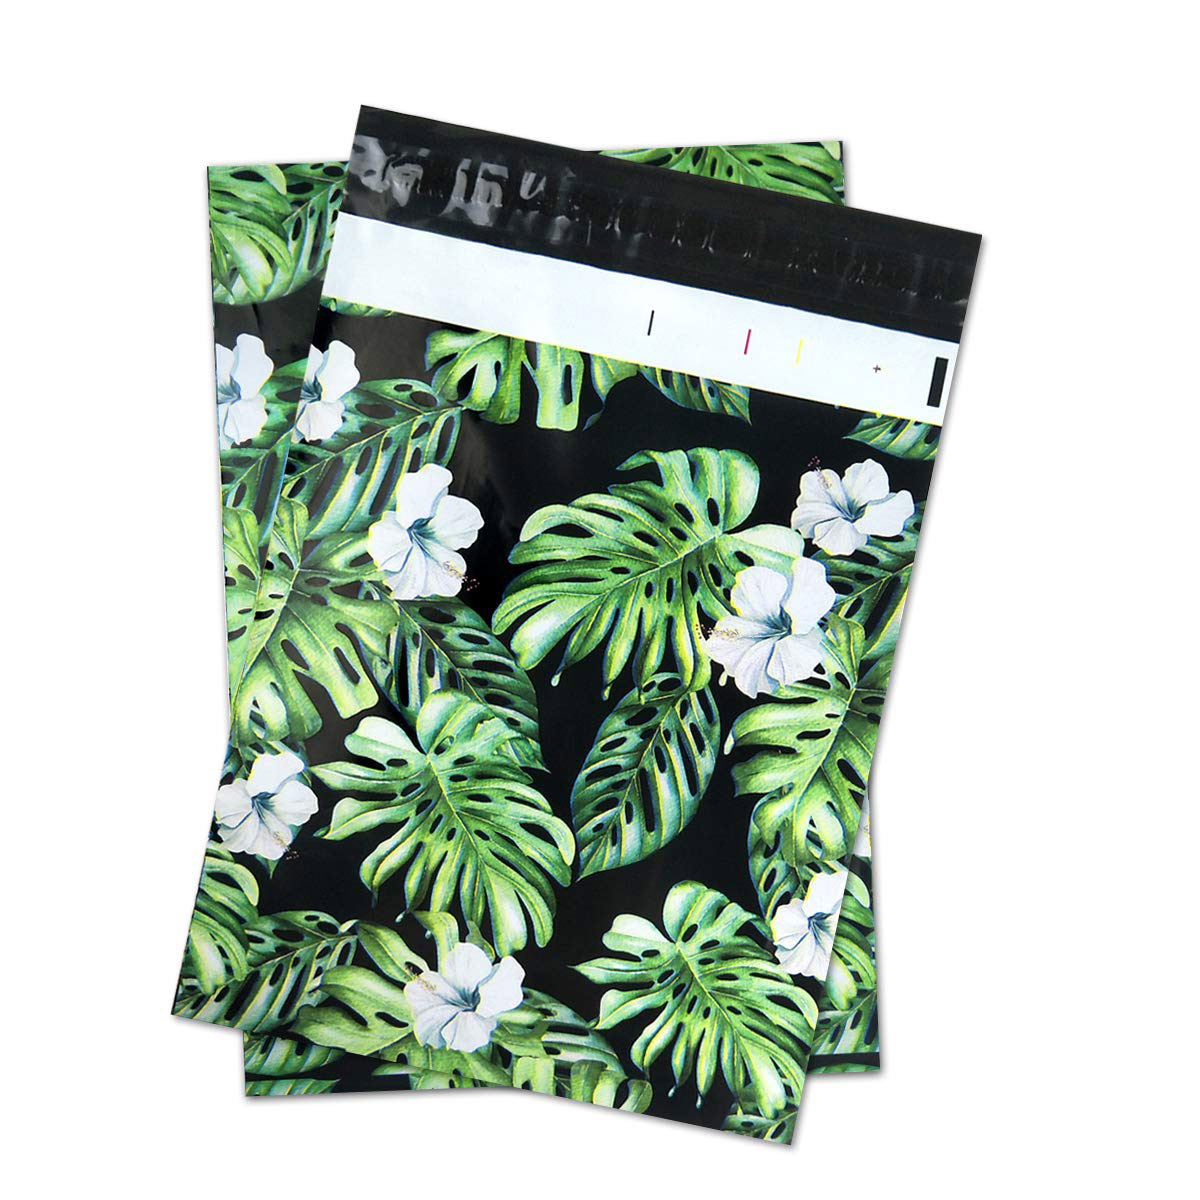 एक्सप्रेस के लिए सुंदर रंग, मेलर बायो-प्लास्टिक मेलिंग बैग, कंपनी को शिपिंग और ई-कॉमर्स शिपिंग बैग के लिए कस्टम वितरित करते हैं